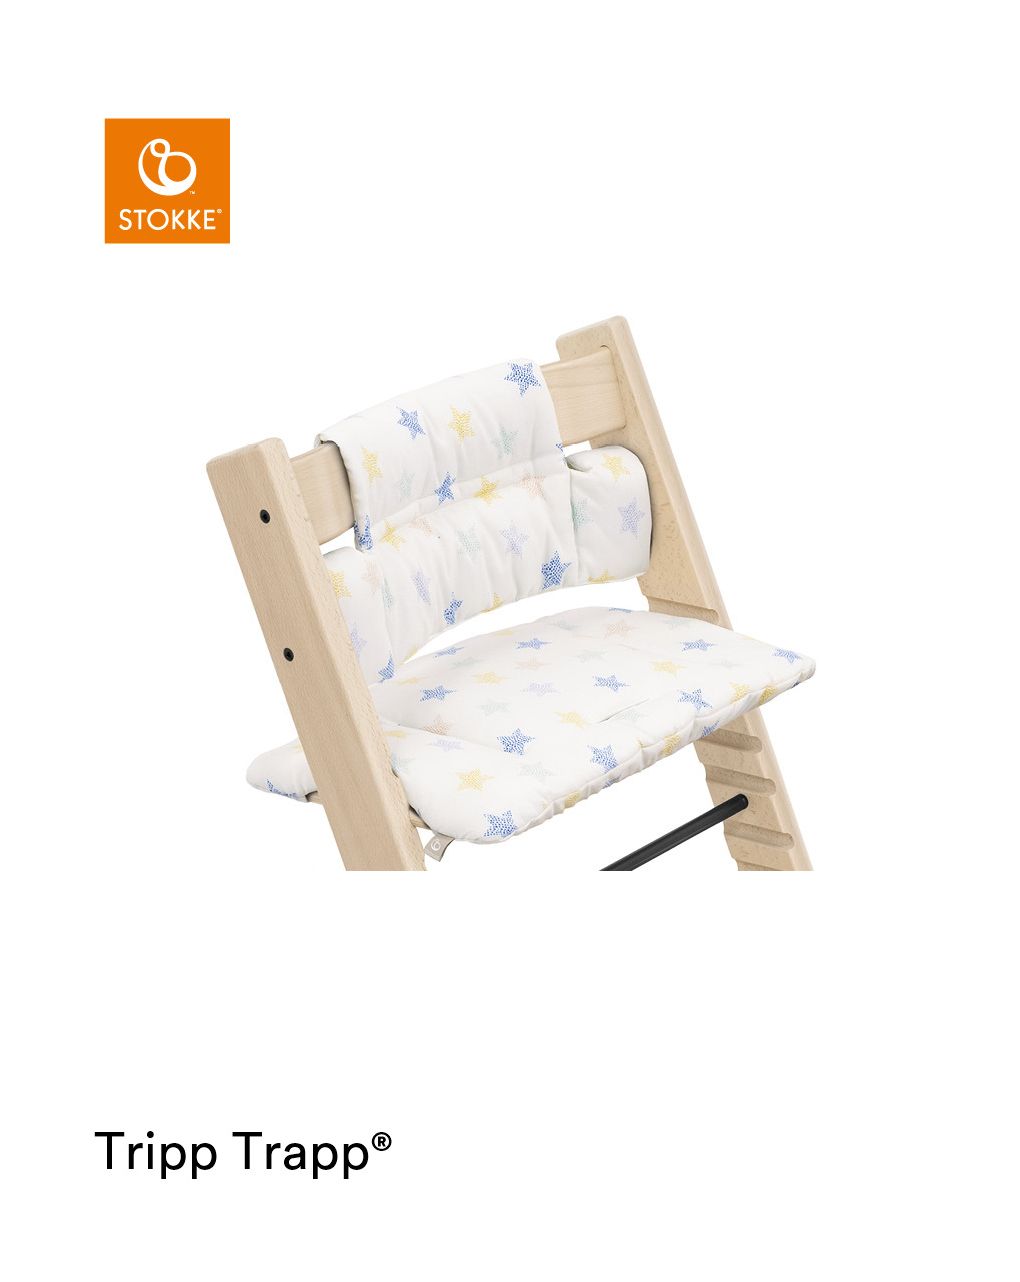 Almofada tripp trapp® classic stars multi ocs almofada para cadeira alta, macia e abertura para seu bebê - Stokke